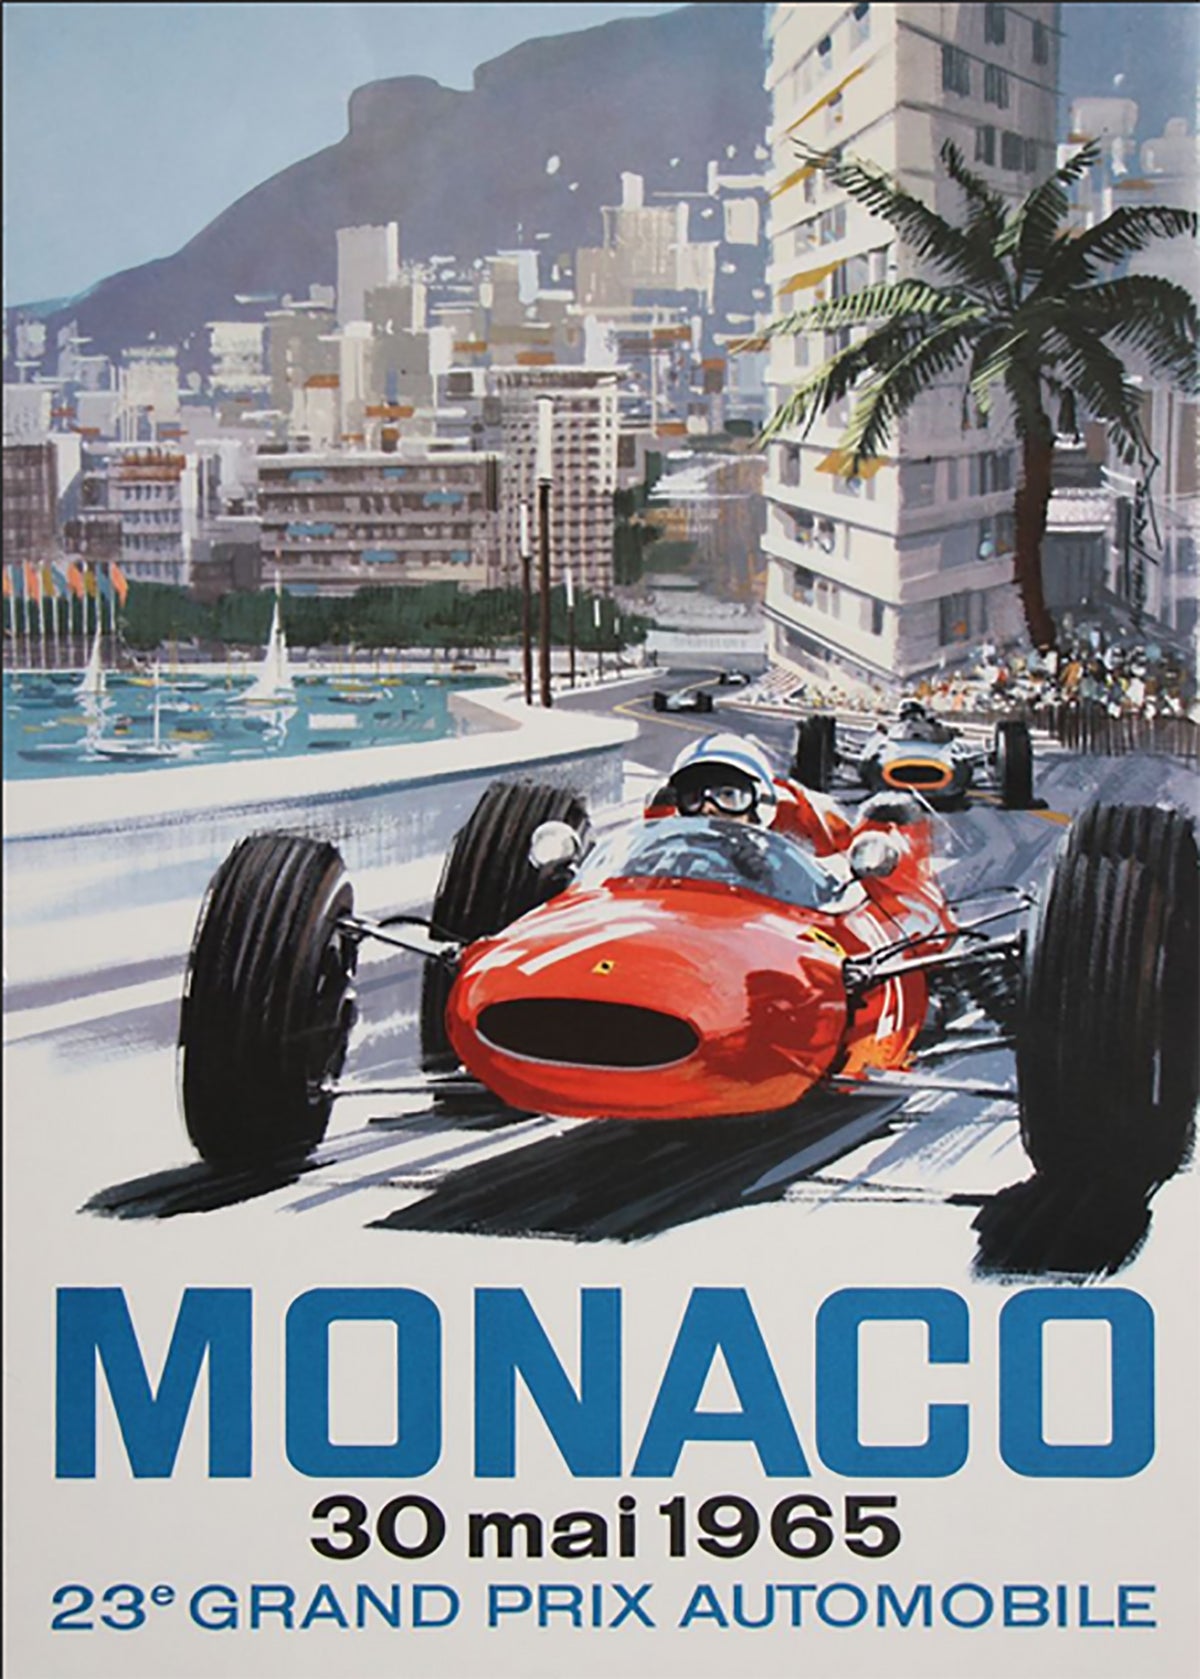 TPFLiving Poster Leinwand / Berühmte Rennen - Vintage - 5. Großer Preis von Monaco 23. April 1933 / Verschiedene Größen - OHNE Rahmen - Modell 22